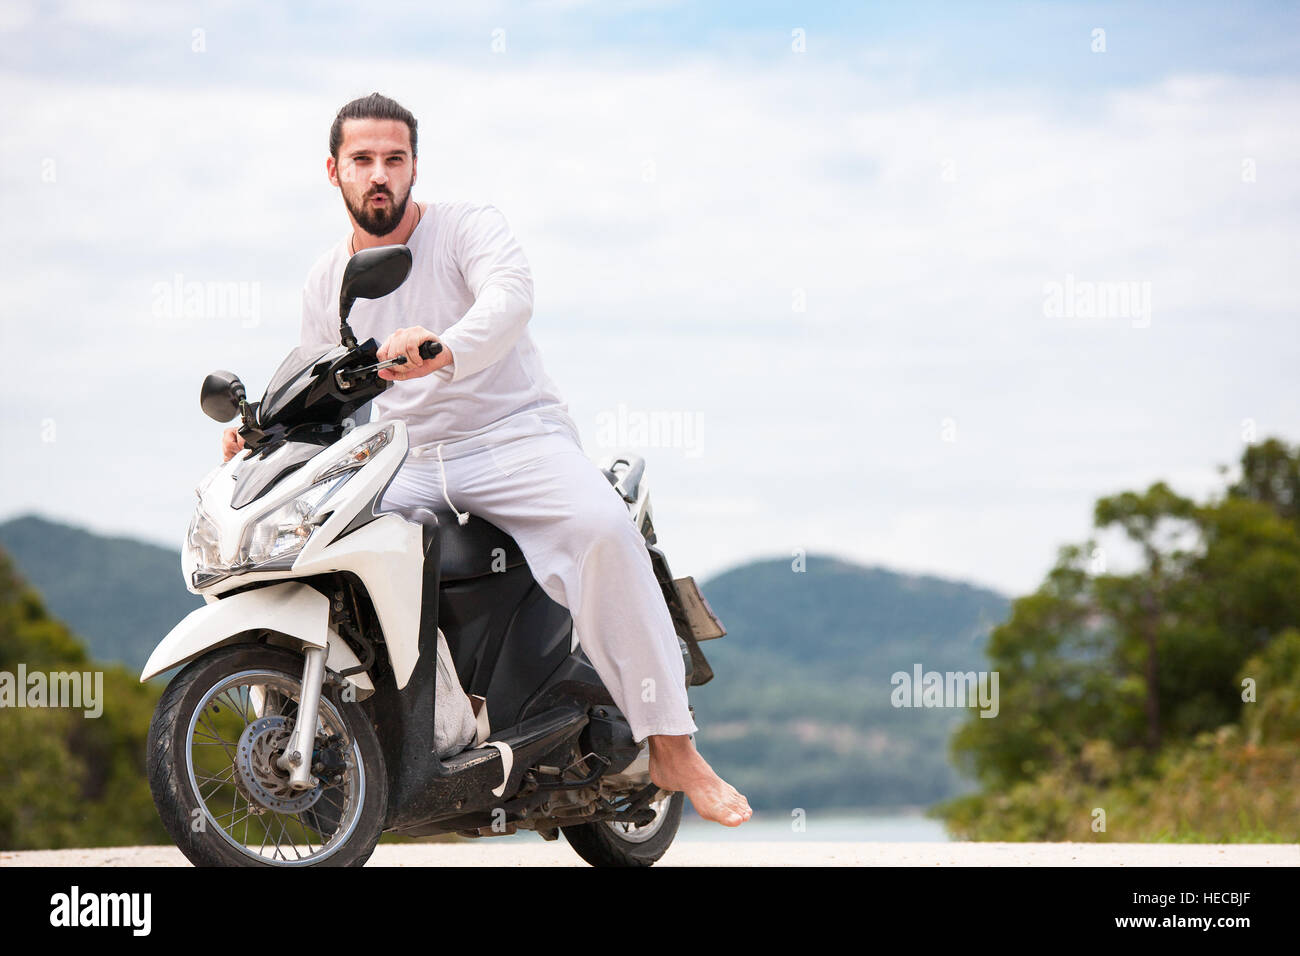 Brutale biker con la barba bianca seduta sulla moto. Giornata di sole in montagna. Foto Stock